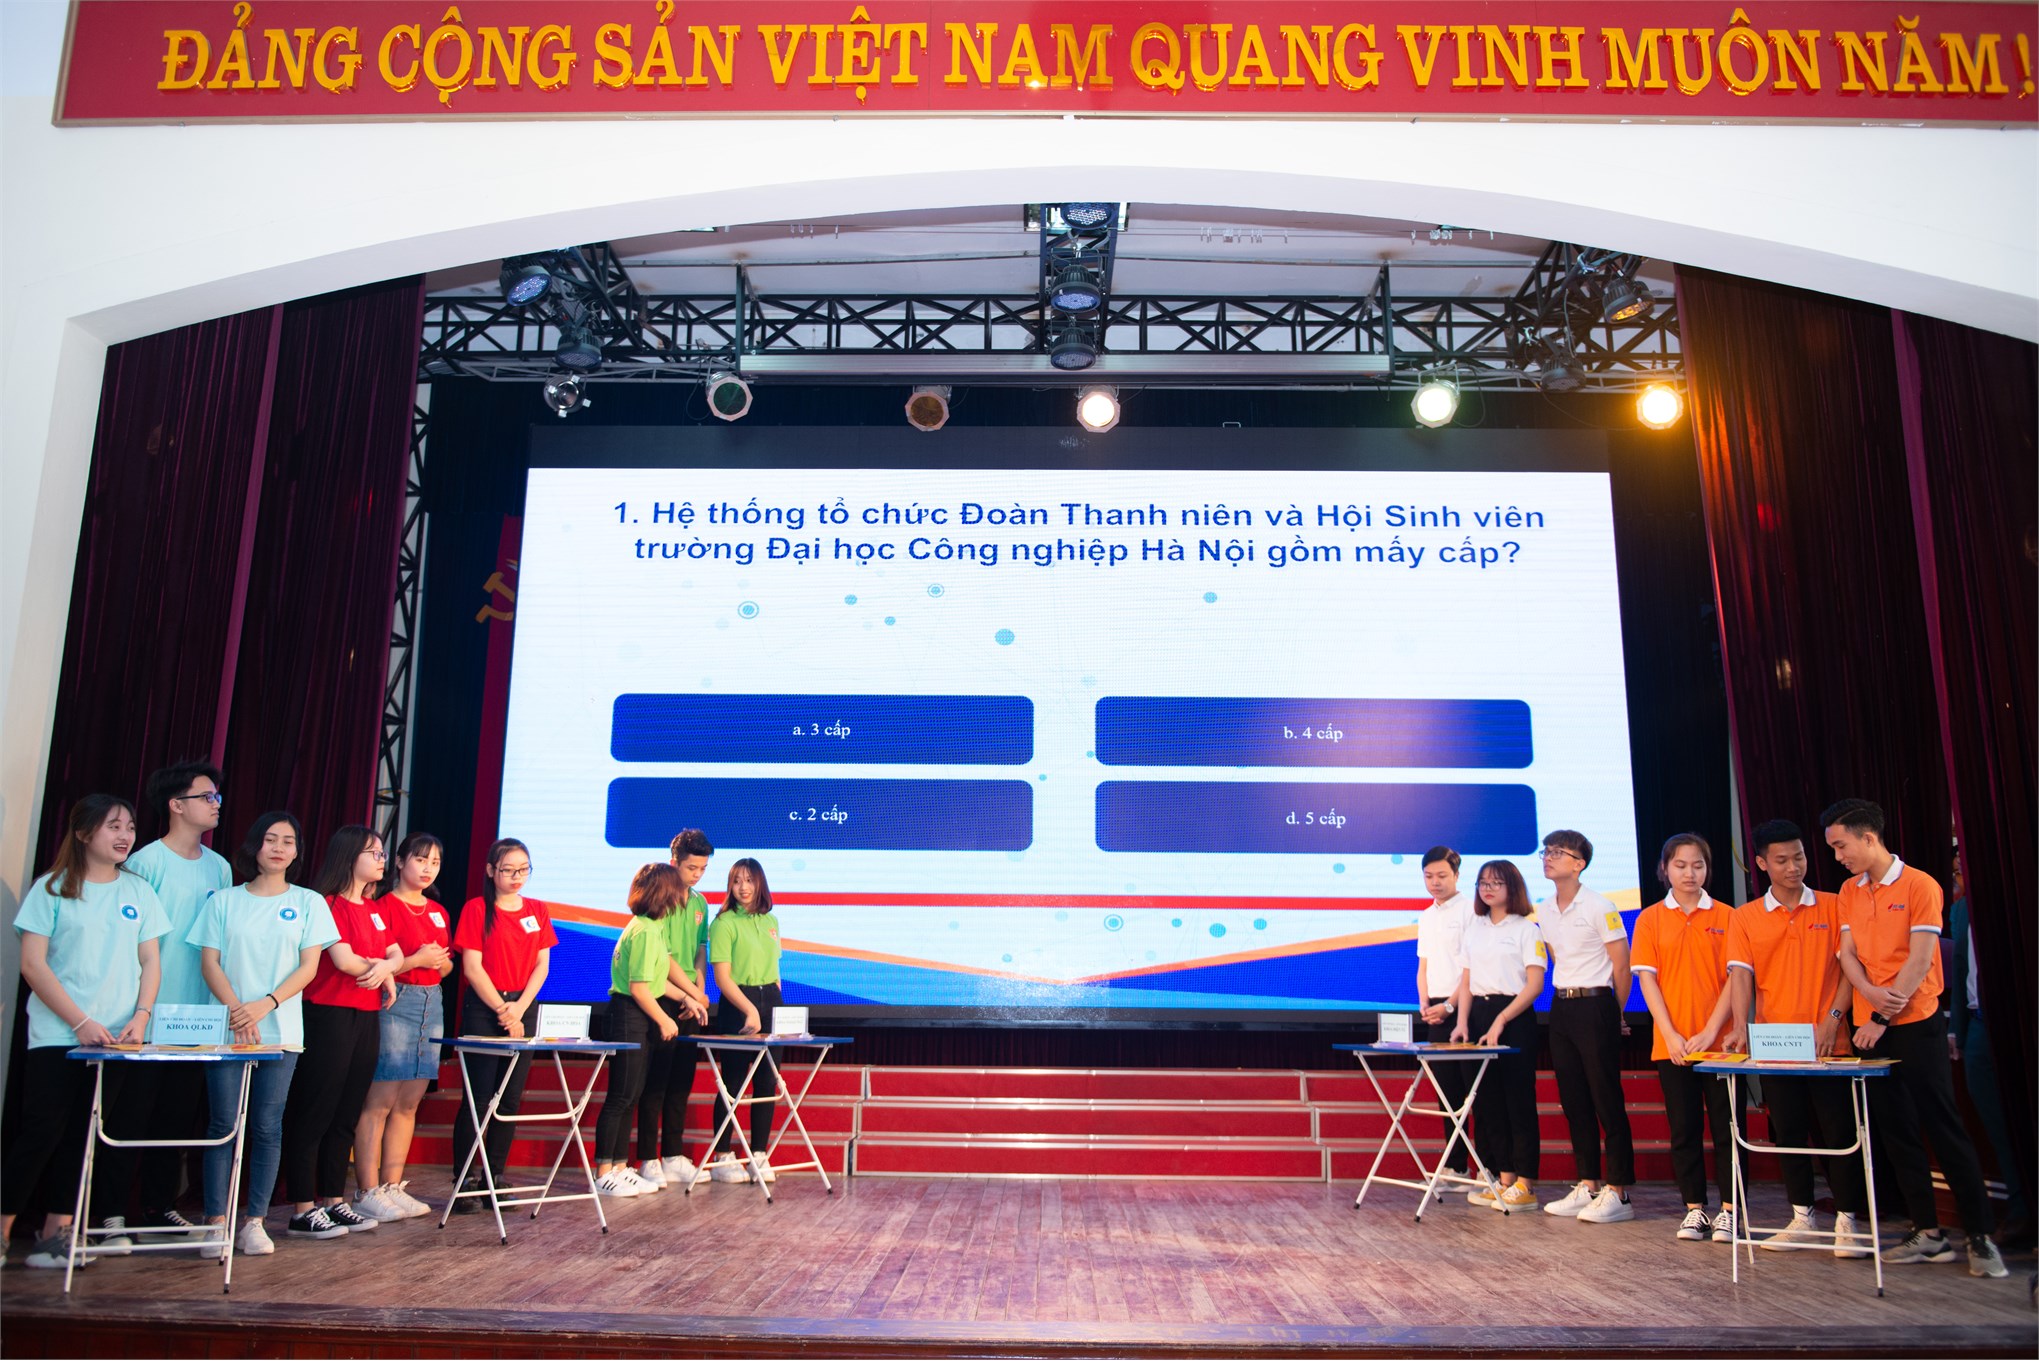 Kỷ niệm 70 năm ngày truyền thống Học sinh sinh viên và Hội sinh viên Việt Nam ( 09/01/1950 - 09/01/2020)